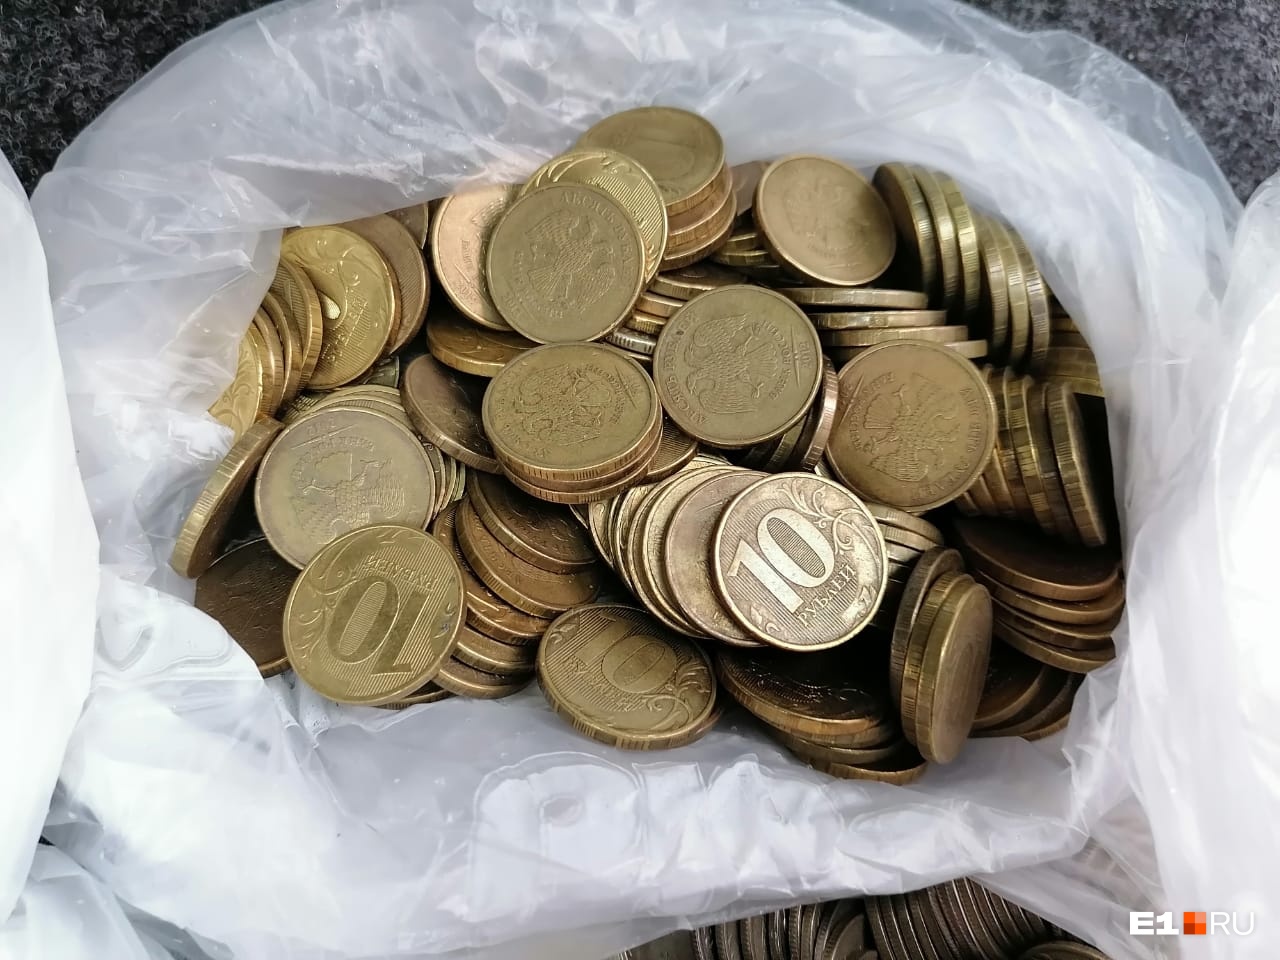 Екатеринбург попадет на десятирублевую монету. Что на ней будет изображено?